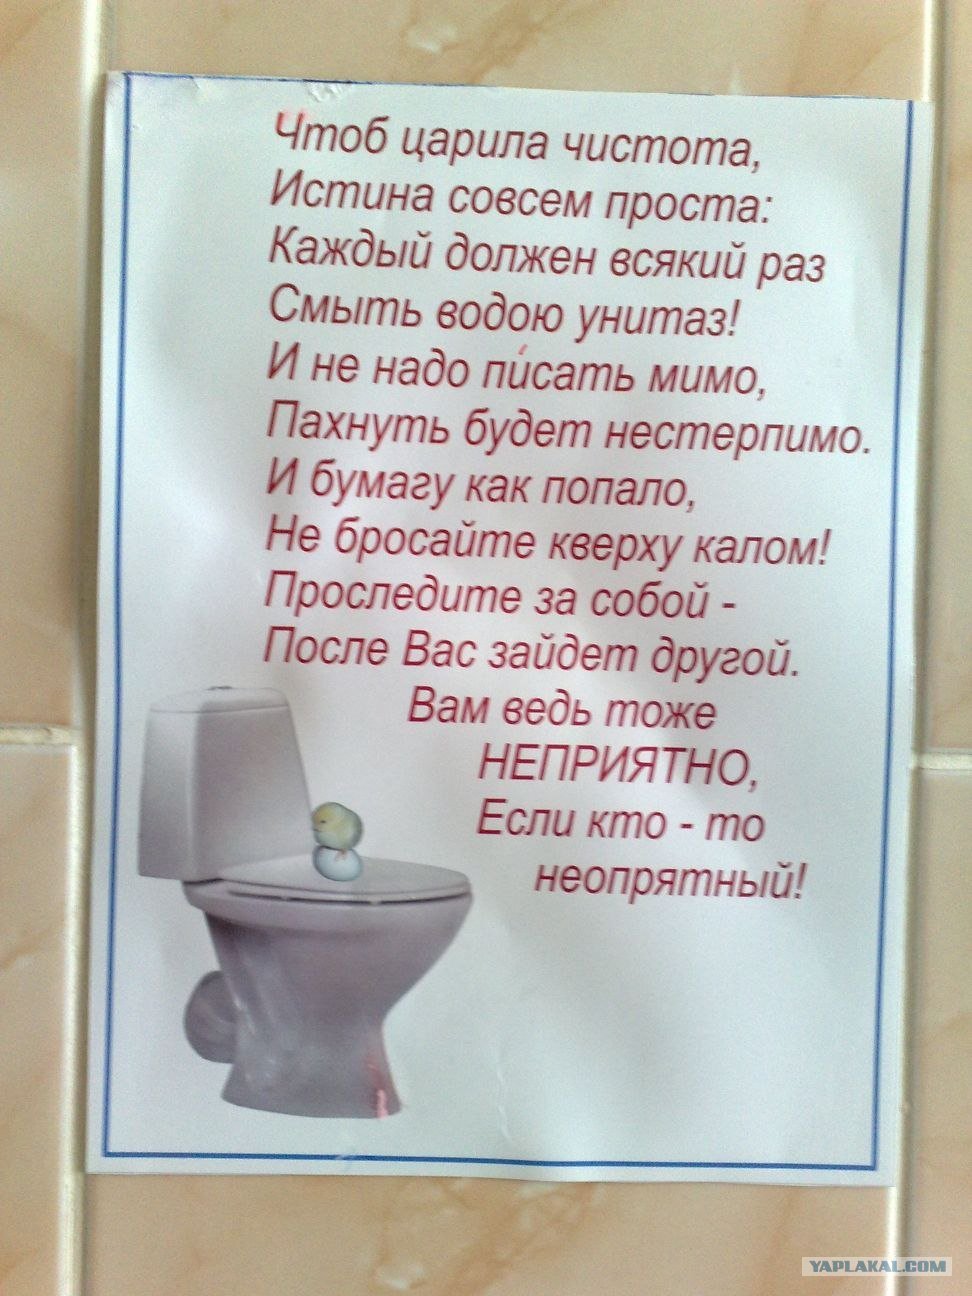 Объявления в туалете о чистоте - 58 фото